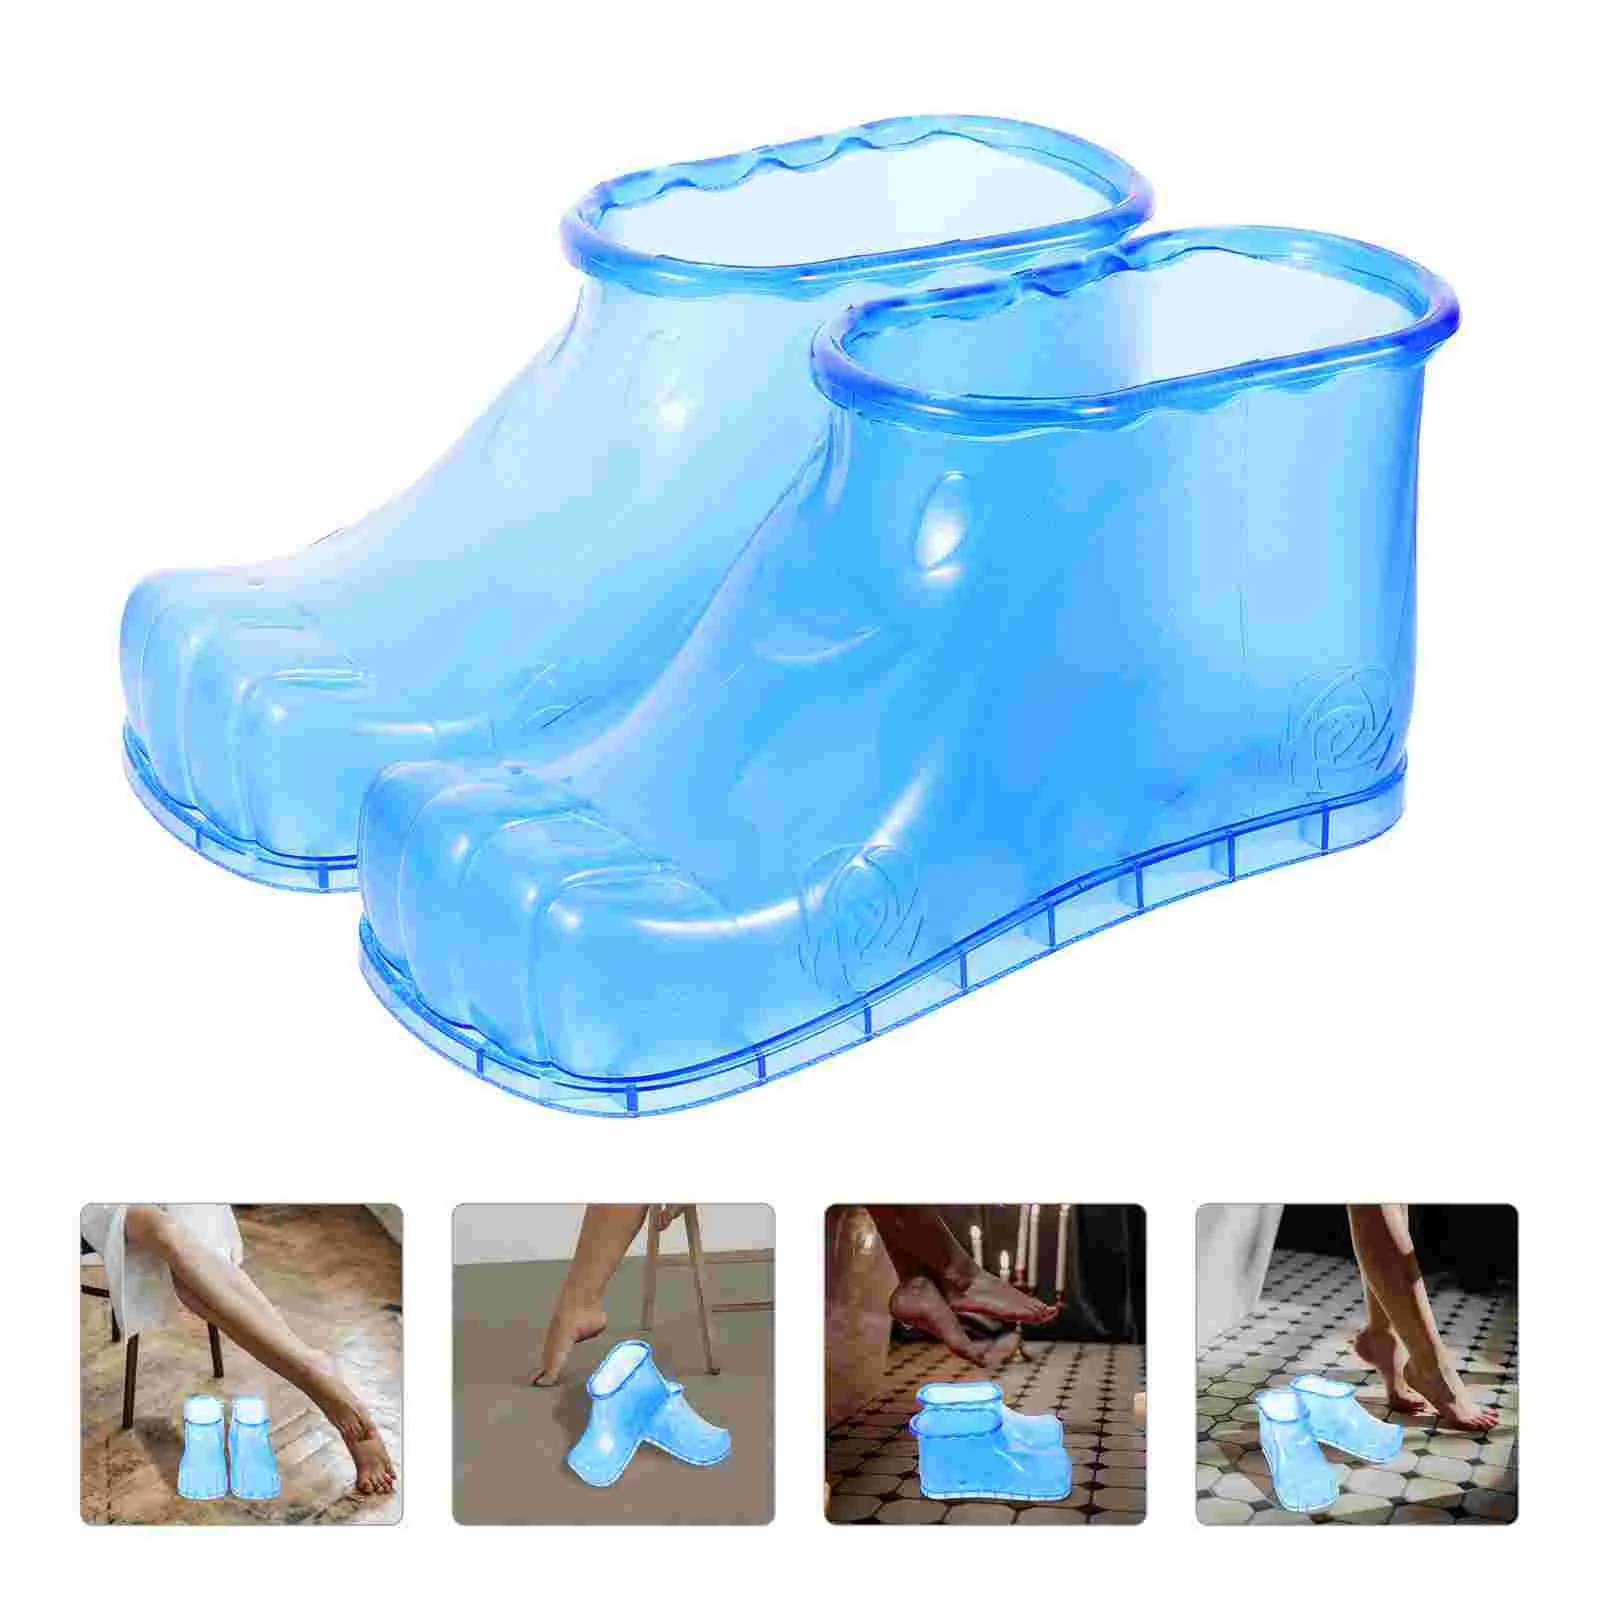 

Пластиковая Ванна обувь для педикюра для ног раковина для дома ванночка массажные ботинки для купания ног